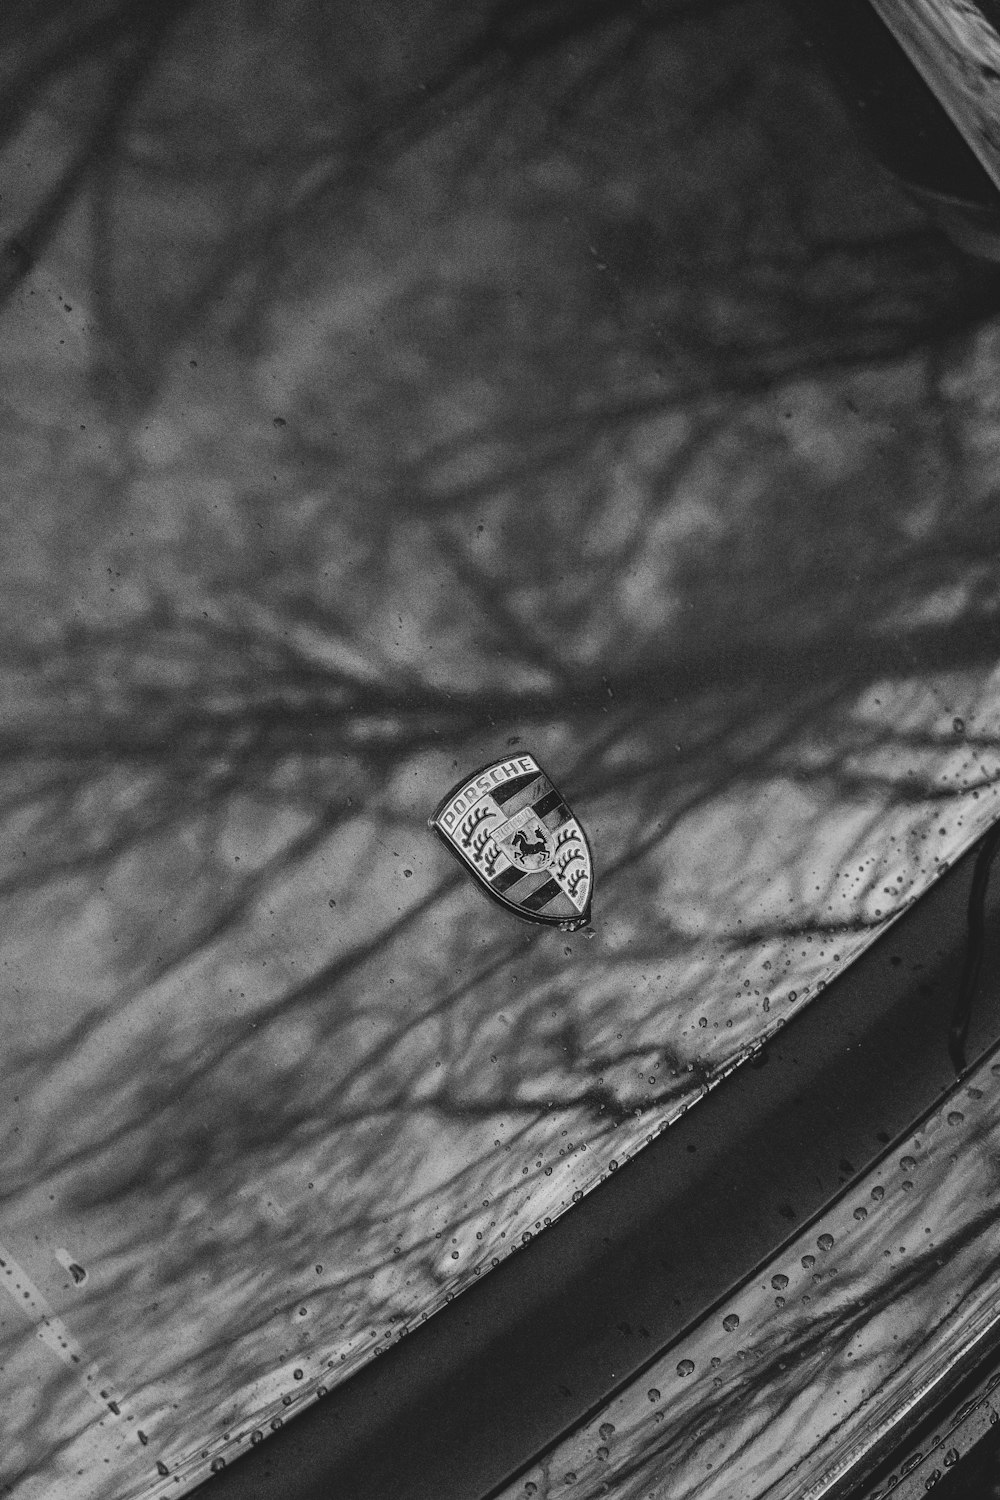 une photo en noir et blanc d’une planche à roulettes au sol